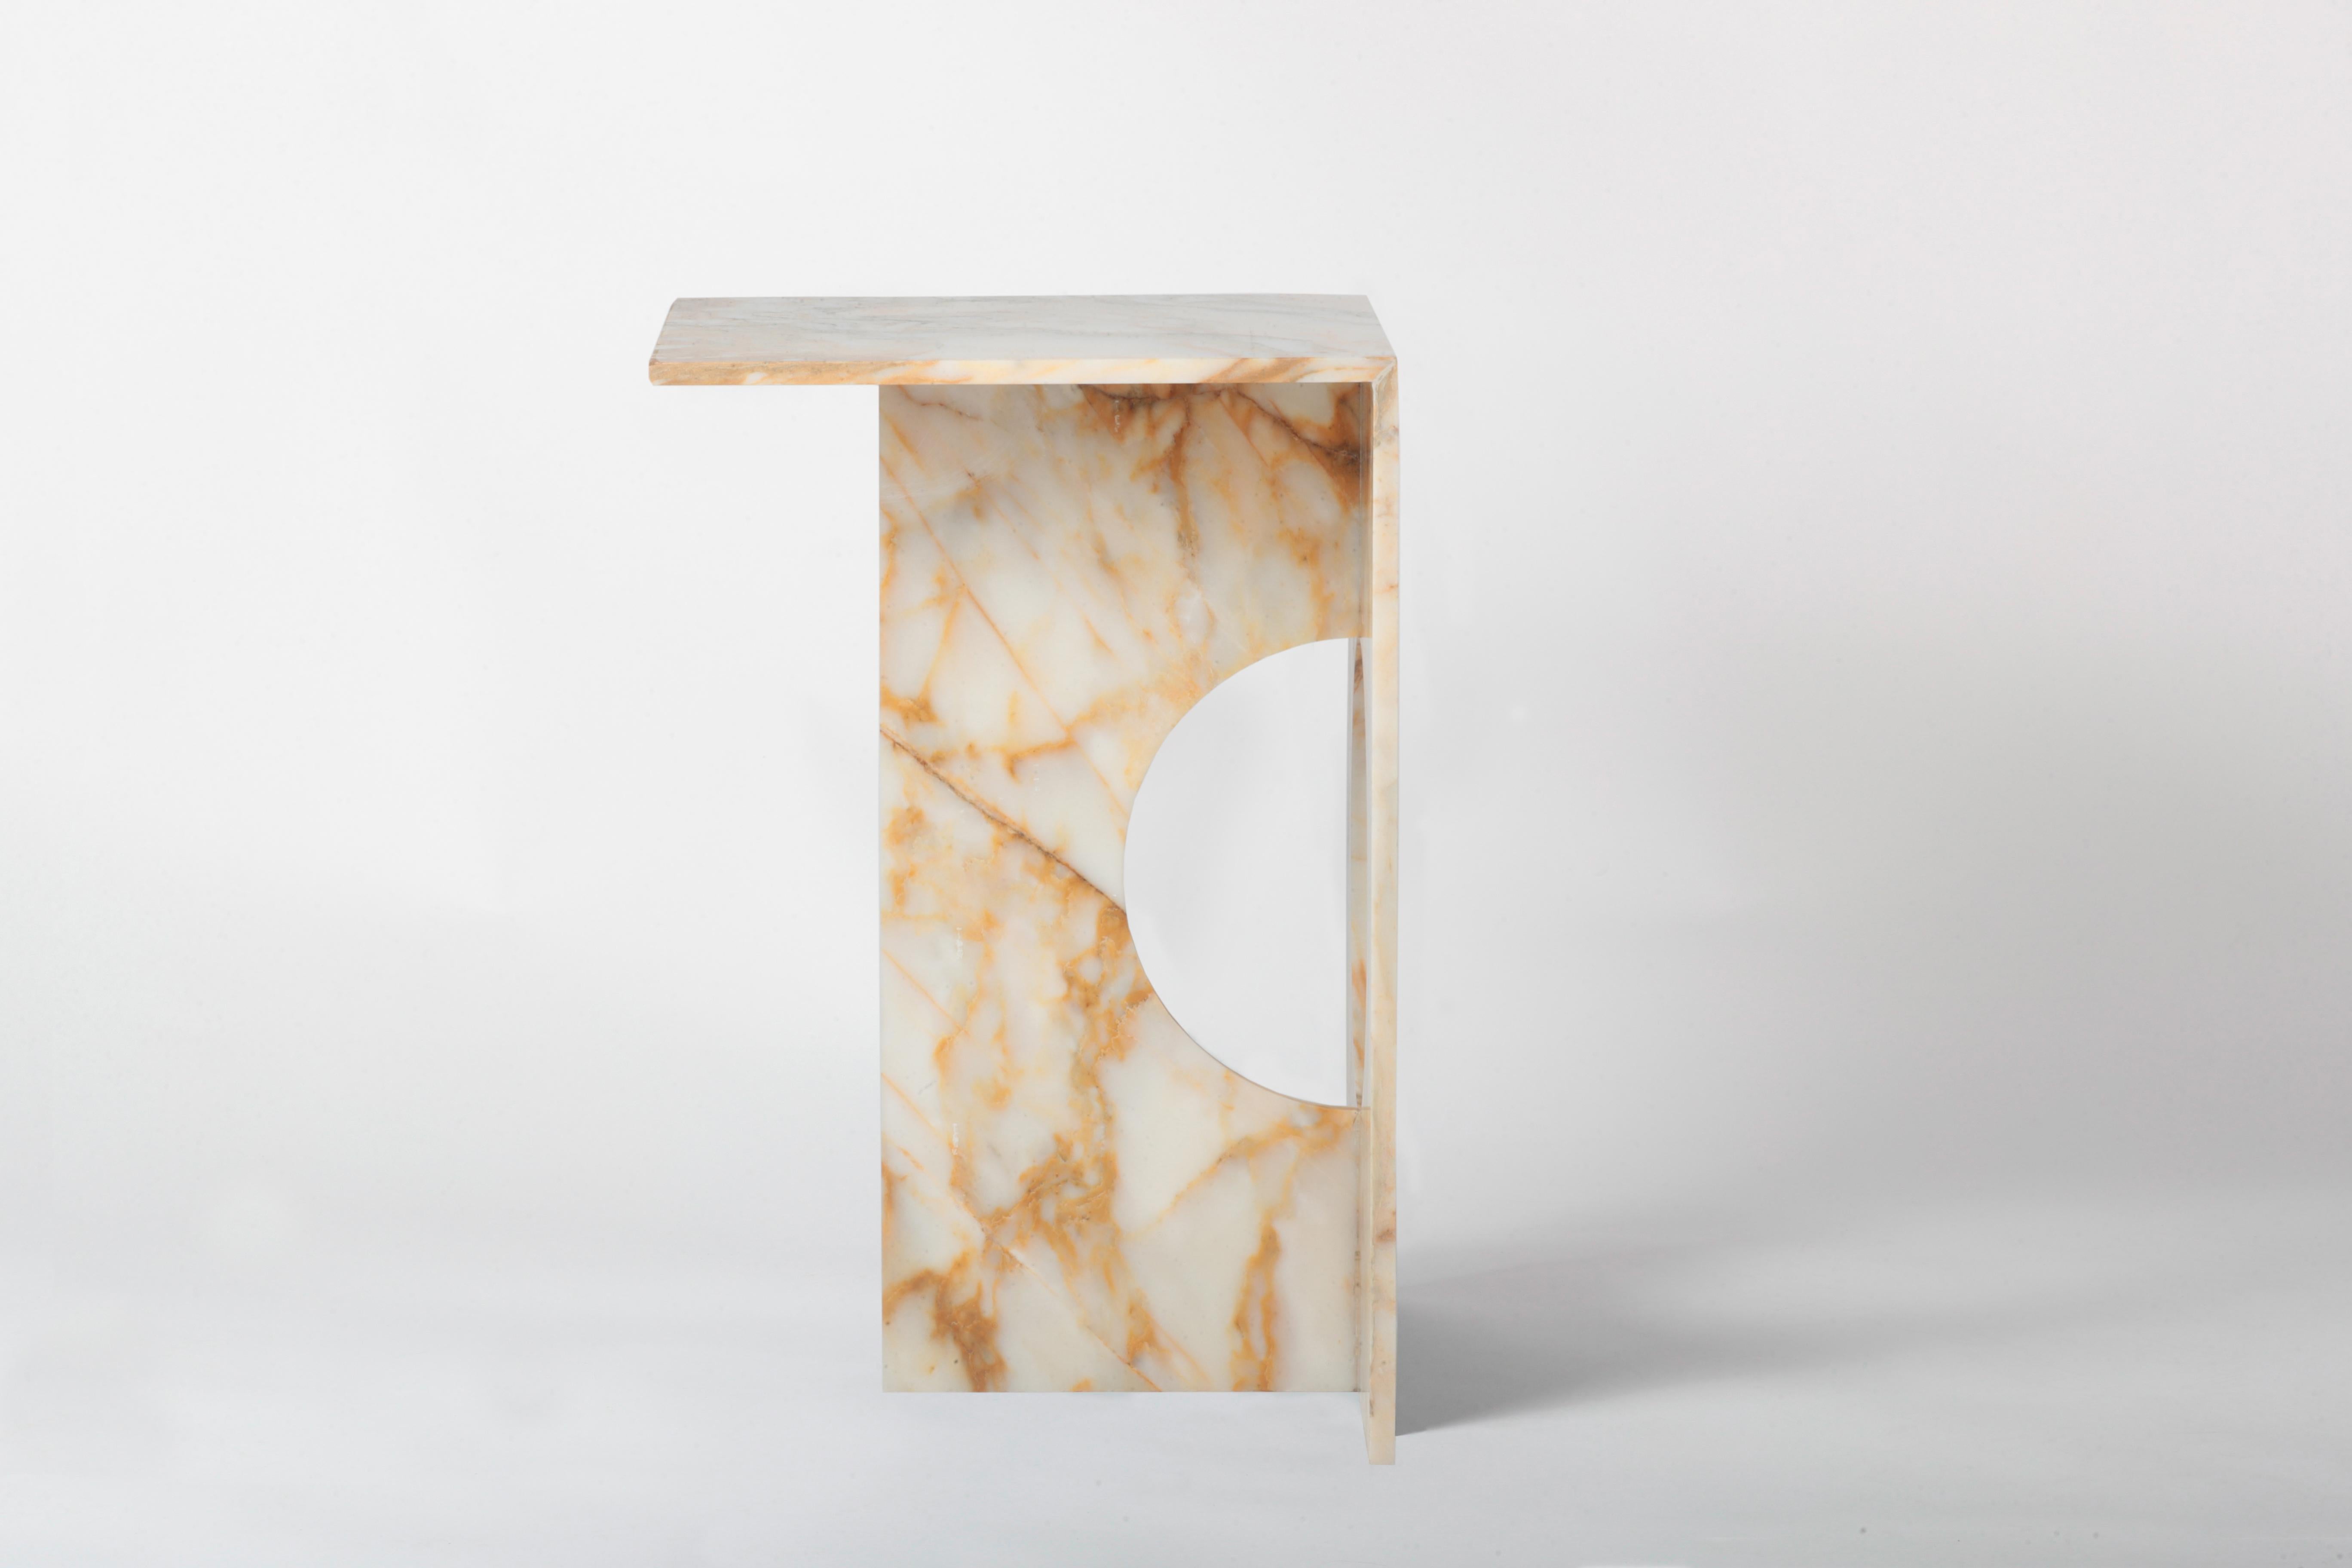 Une table d'appoint entièrement réalisée en marbre fait de cette pièce une sculpture moderne. La table d'appoint Ola peut être réalisée en différents marbres ou en pierre de diabase verte si nécessaire. La perfection de la coupe à la machine se mêle